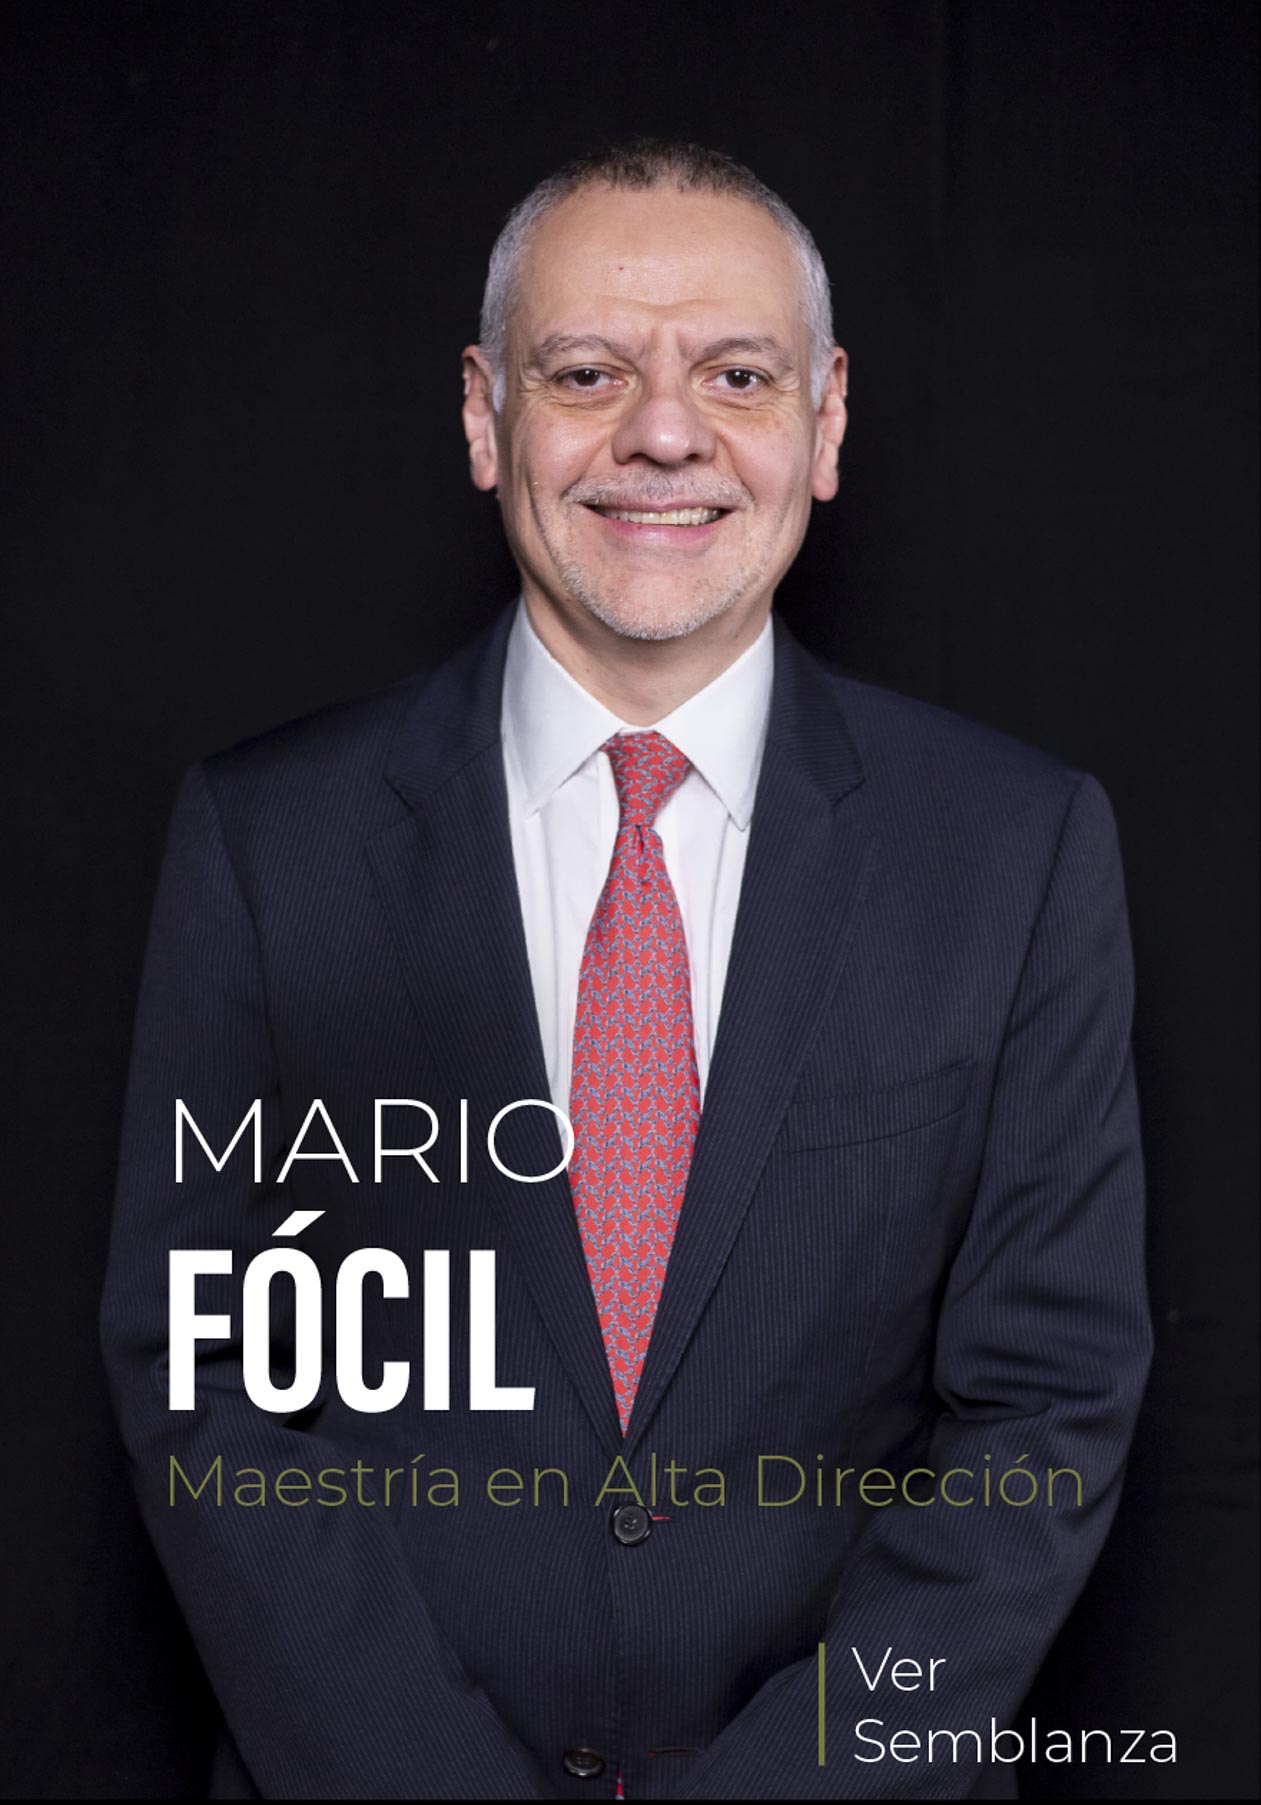 Mario Focil